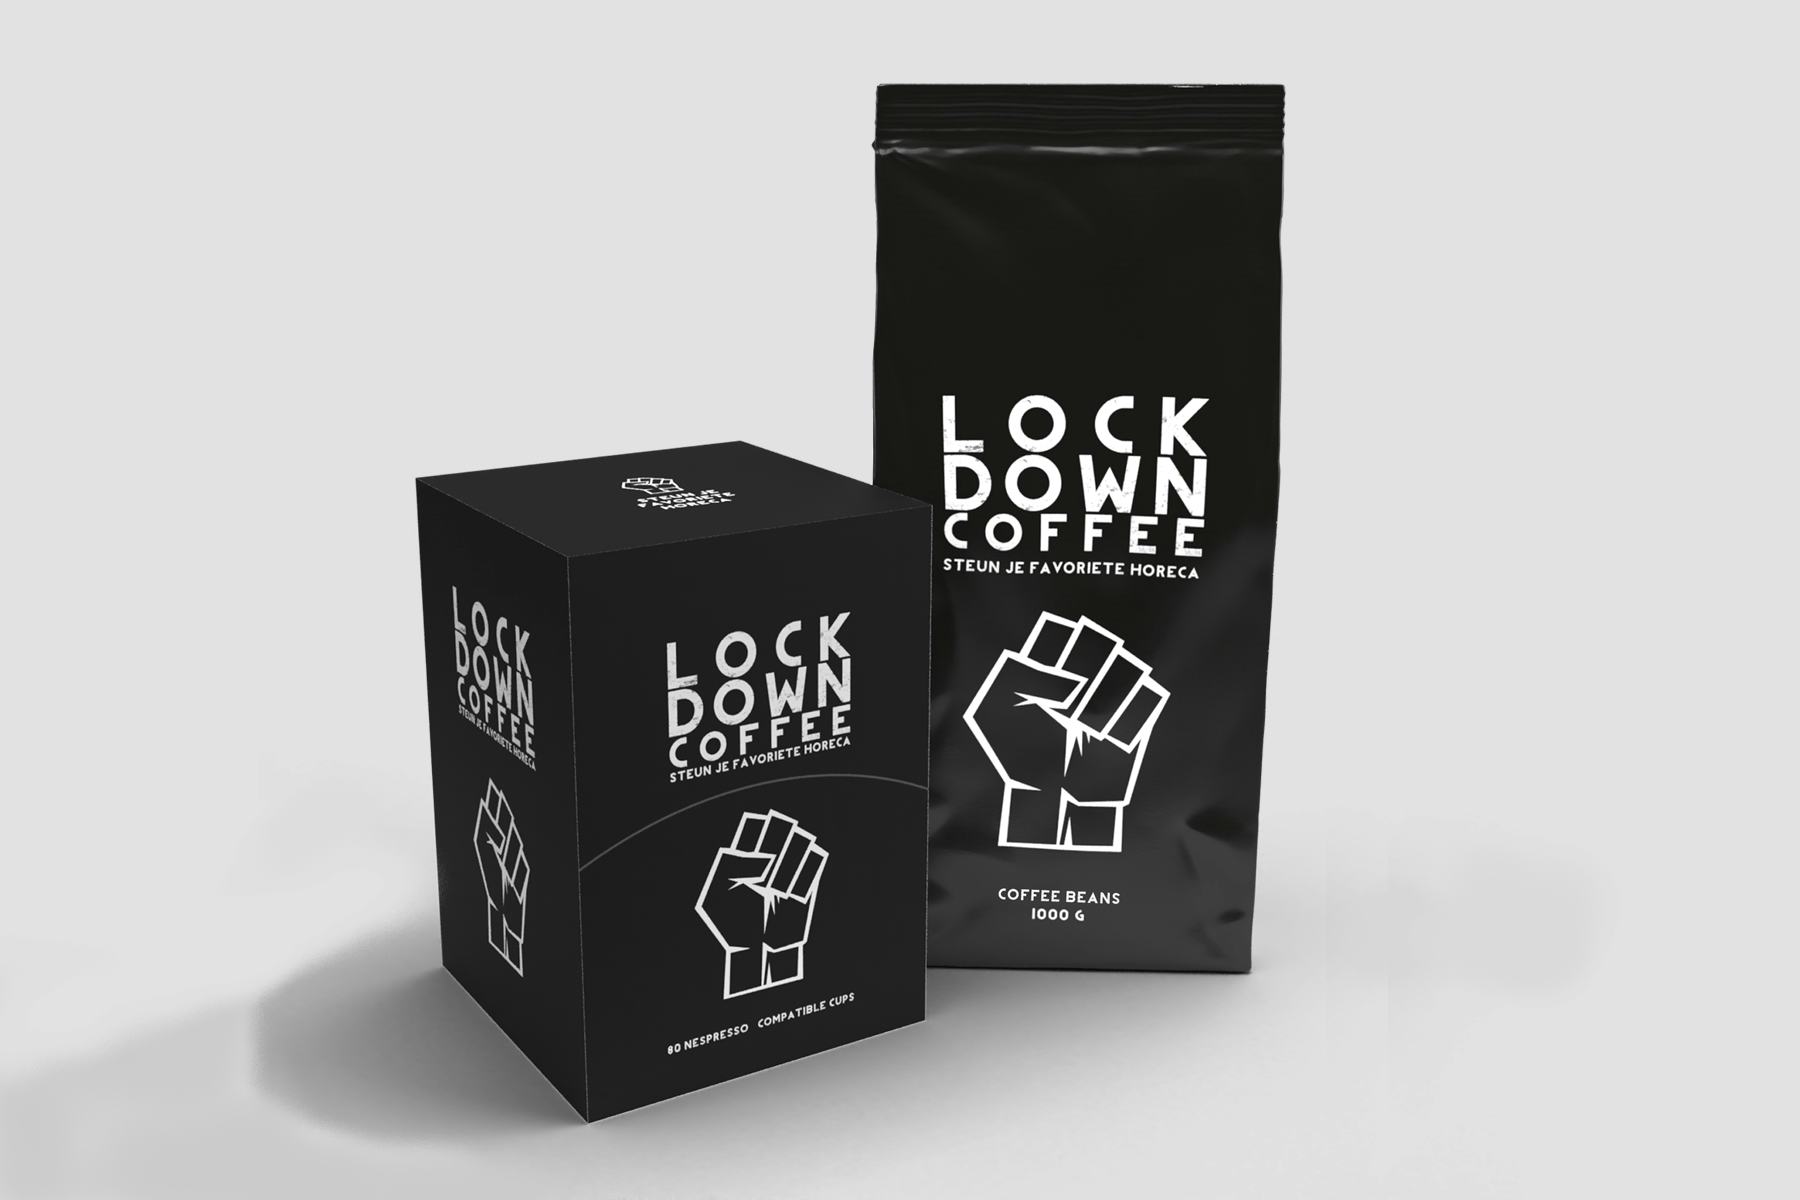 Koffieleveranciers steunen horeca met 'lockdown coffee actie'